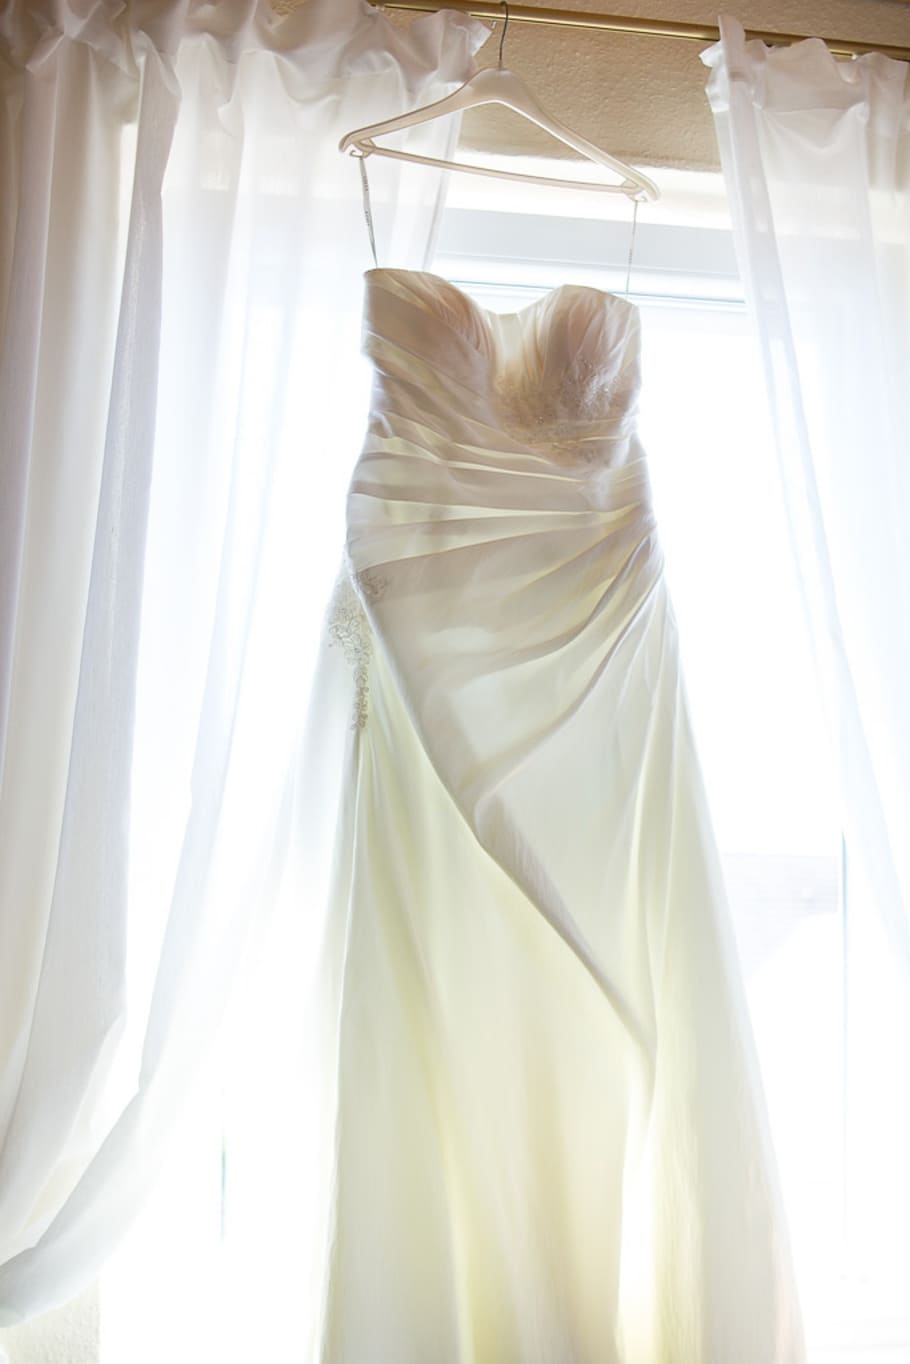 putih, menggantungkan gaun pengantin tabung, menggantung, gantungan baju, tirai jendela, pernikahan, gaun, tirai, jendela, di dalam ruangan